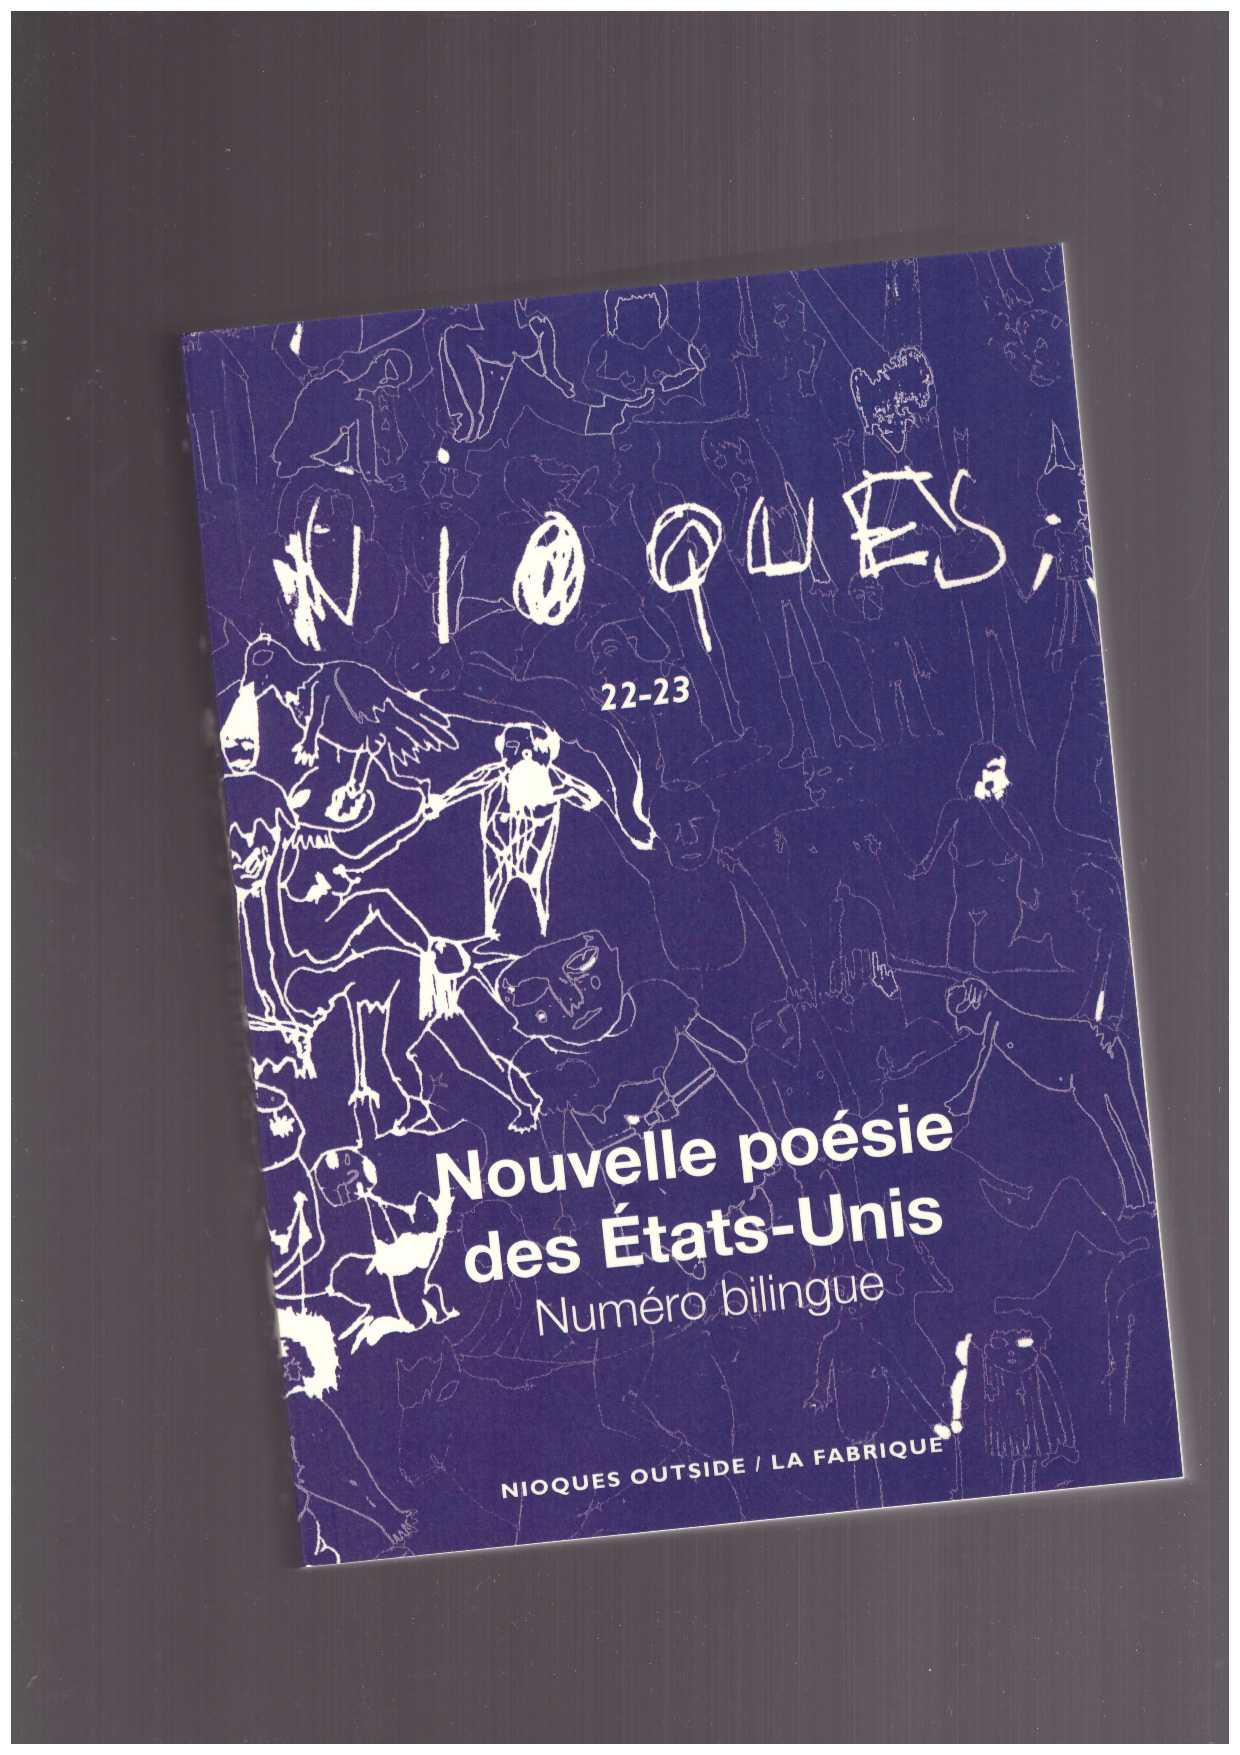 Double Change (eds) - Nioques n°22-23 Nouvelle poésie des États-Unis